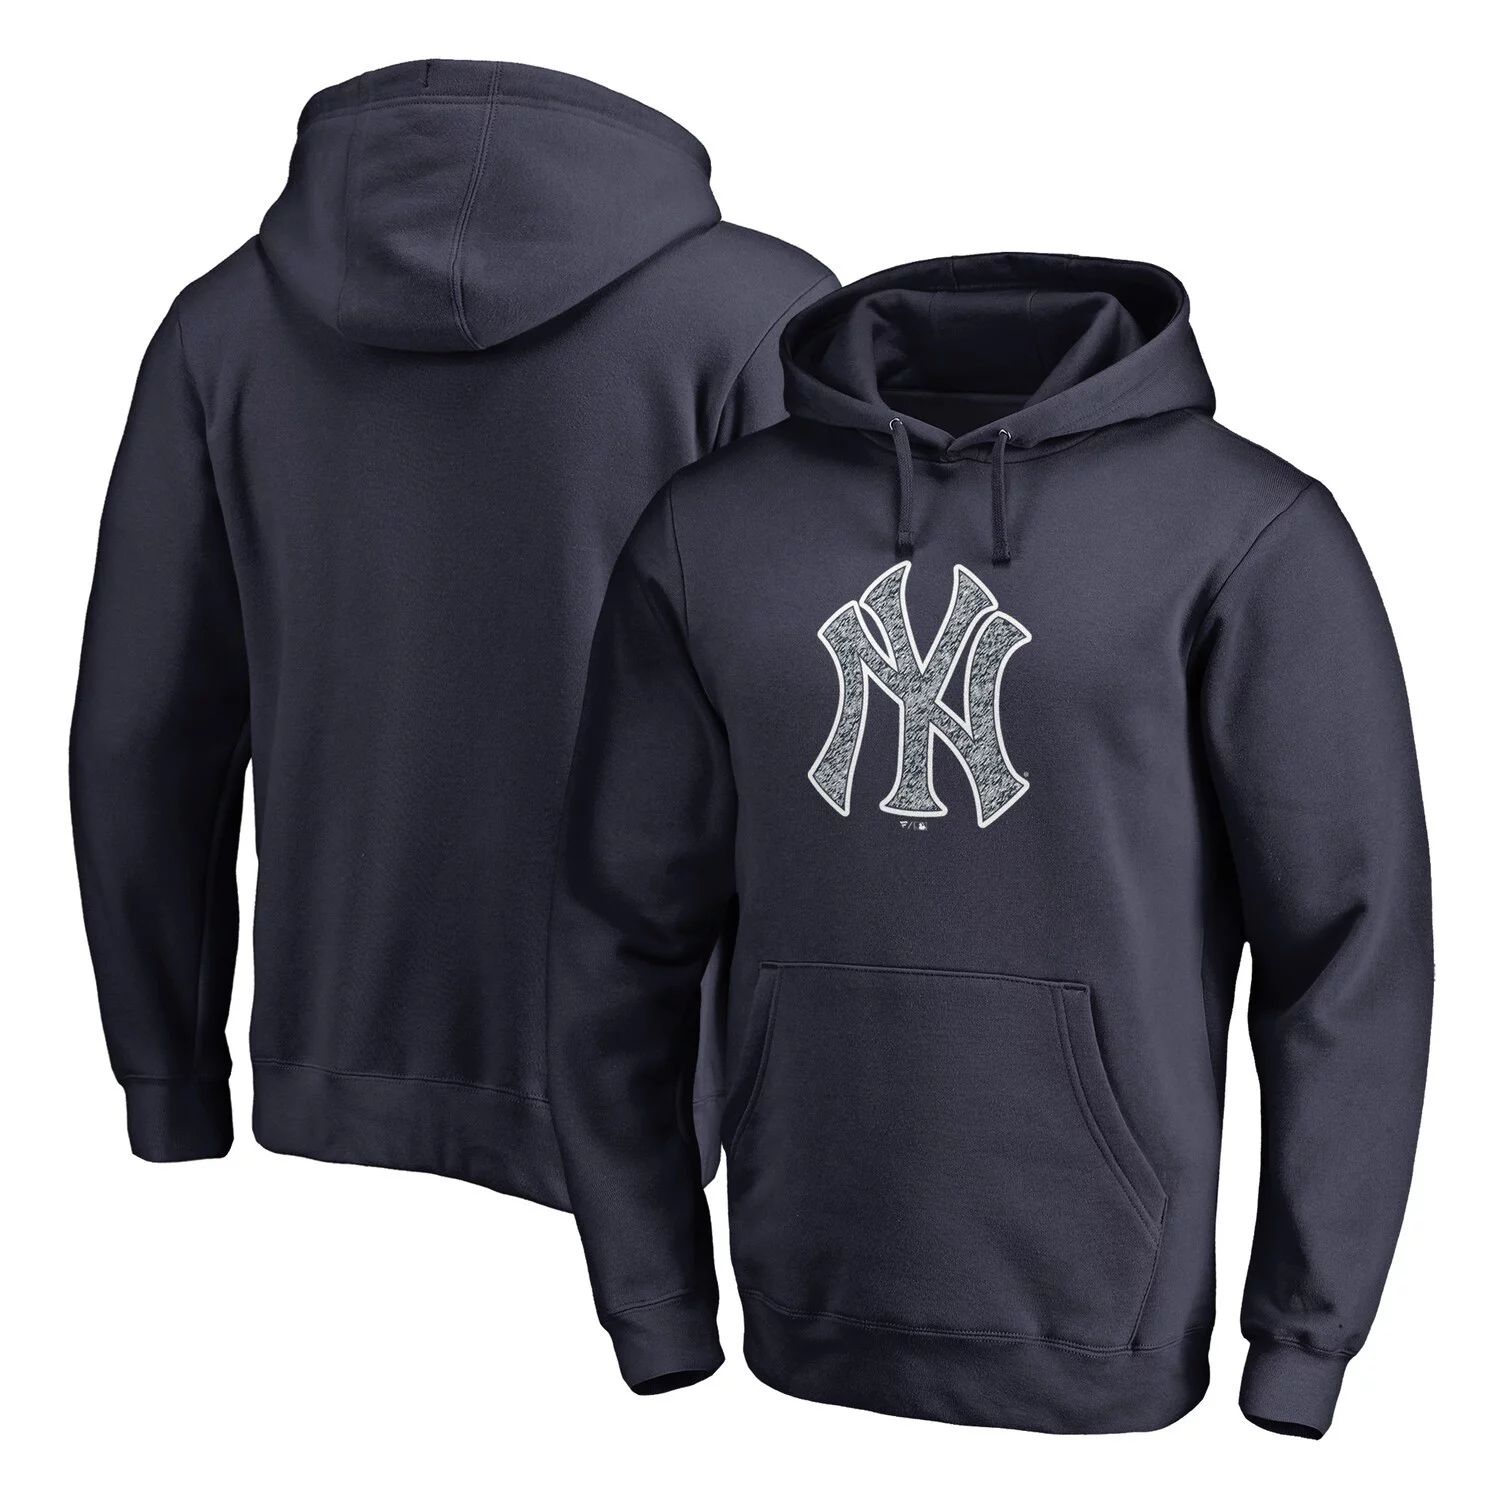 цена Мужской темно-синий пуловер с капюшоном со статическим логотипом New York Yankees Fanatics